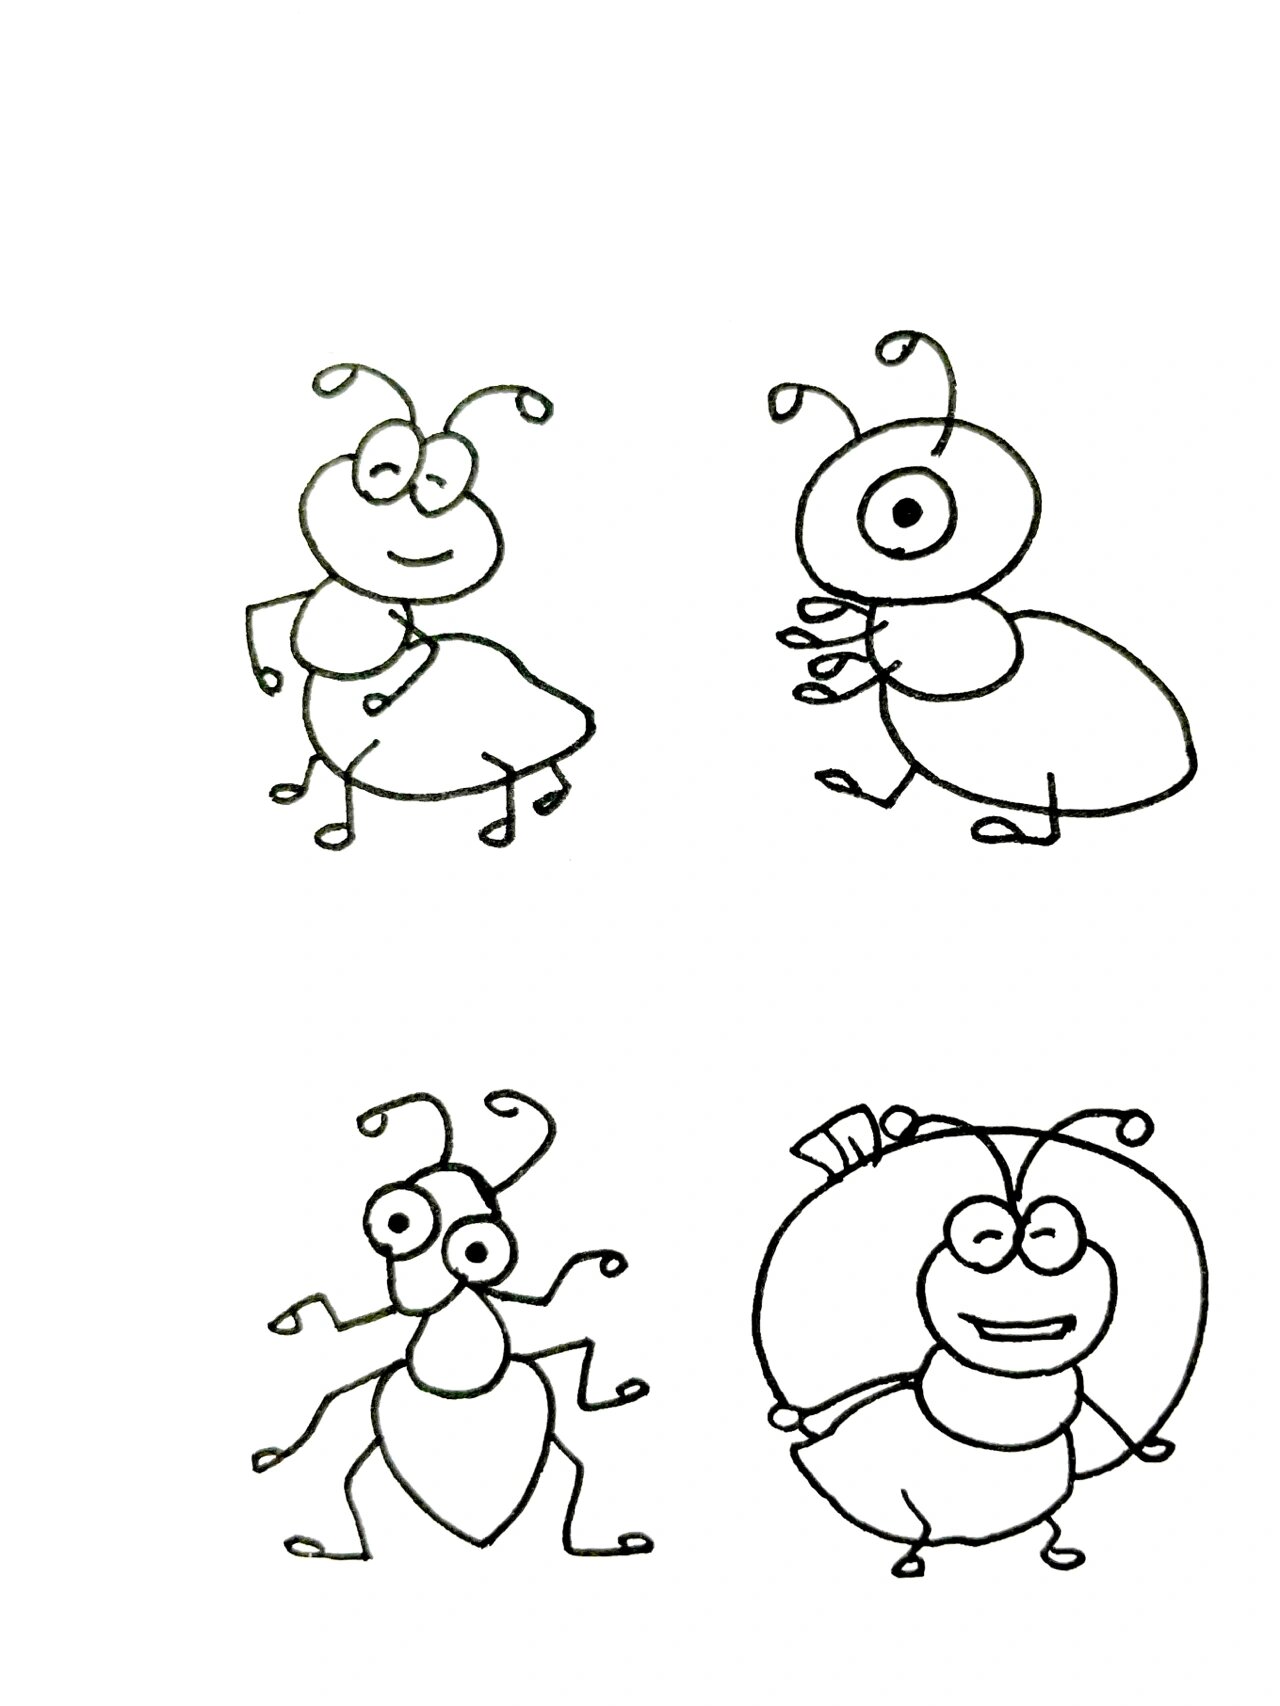 【简笔画】蚂蚁92 分享一组动物简笔画 还喜欢什么,留言给我哦 每天